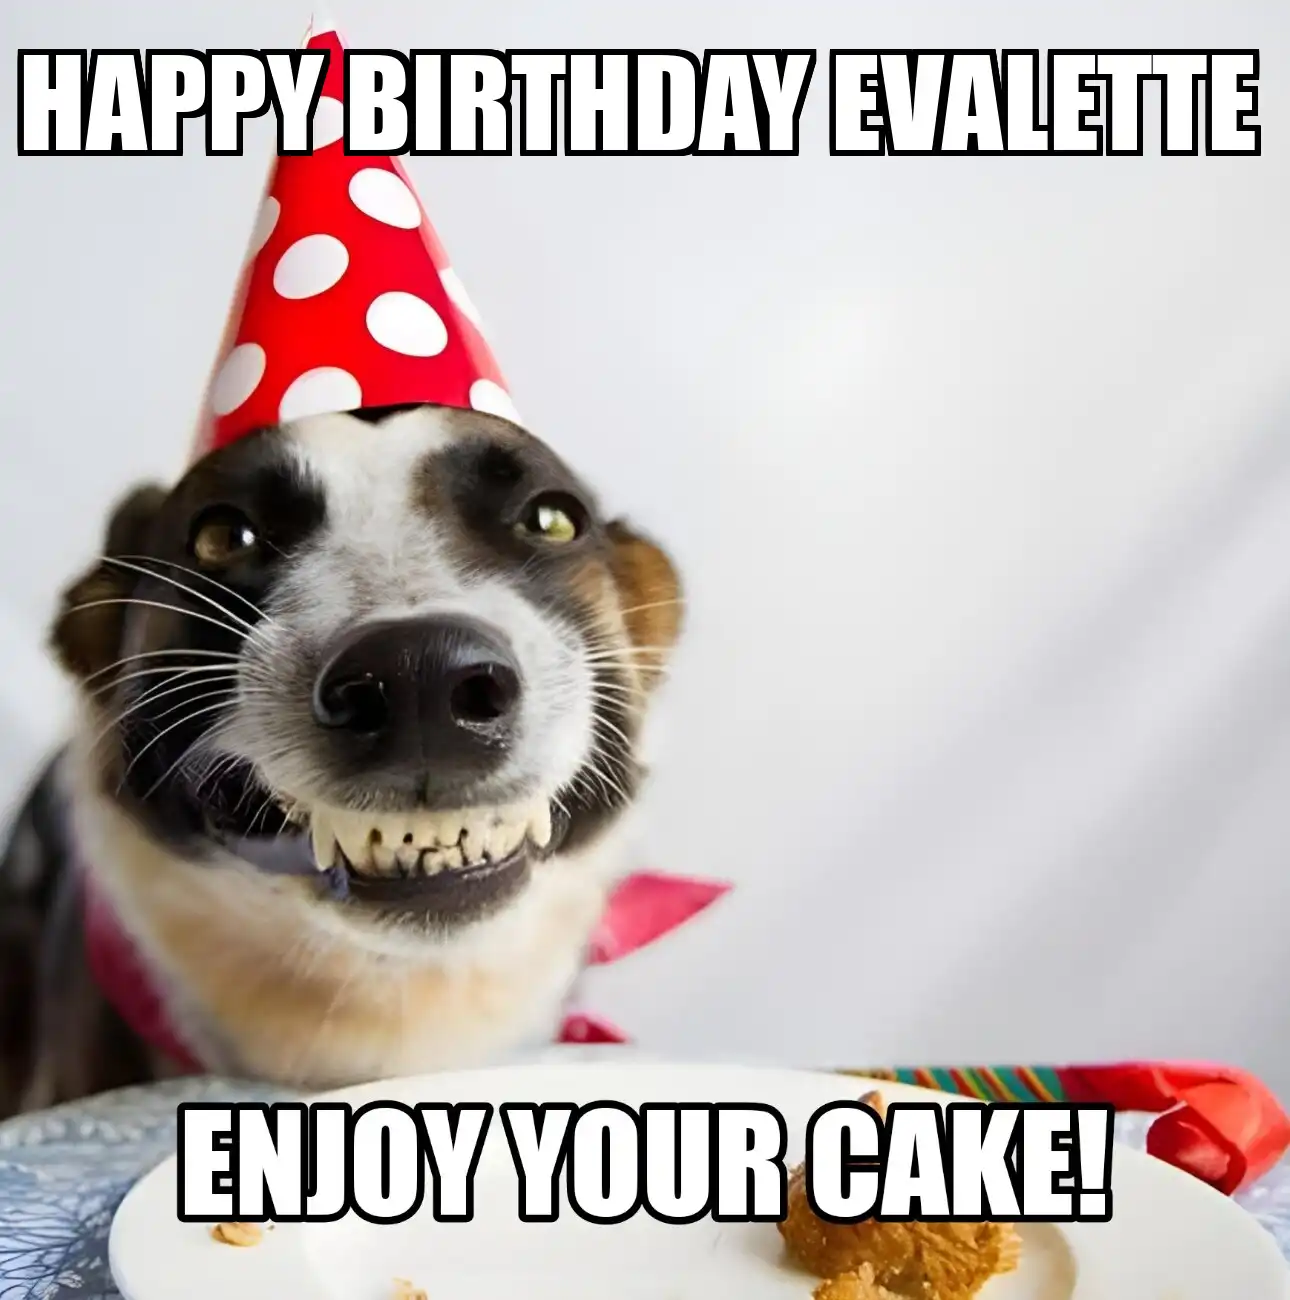 Happy Birthday Evalette Enjoy Your Cake Dog Meme